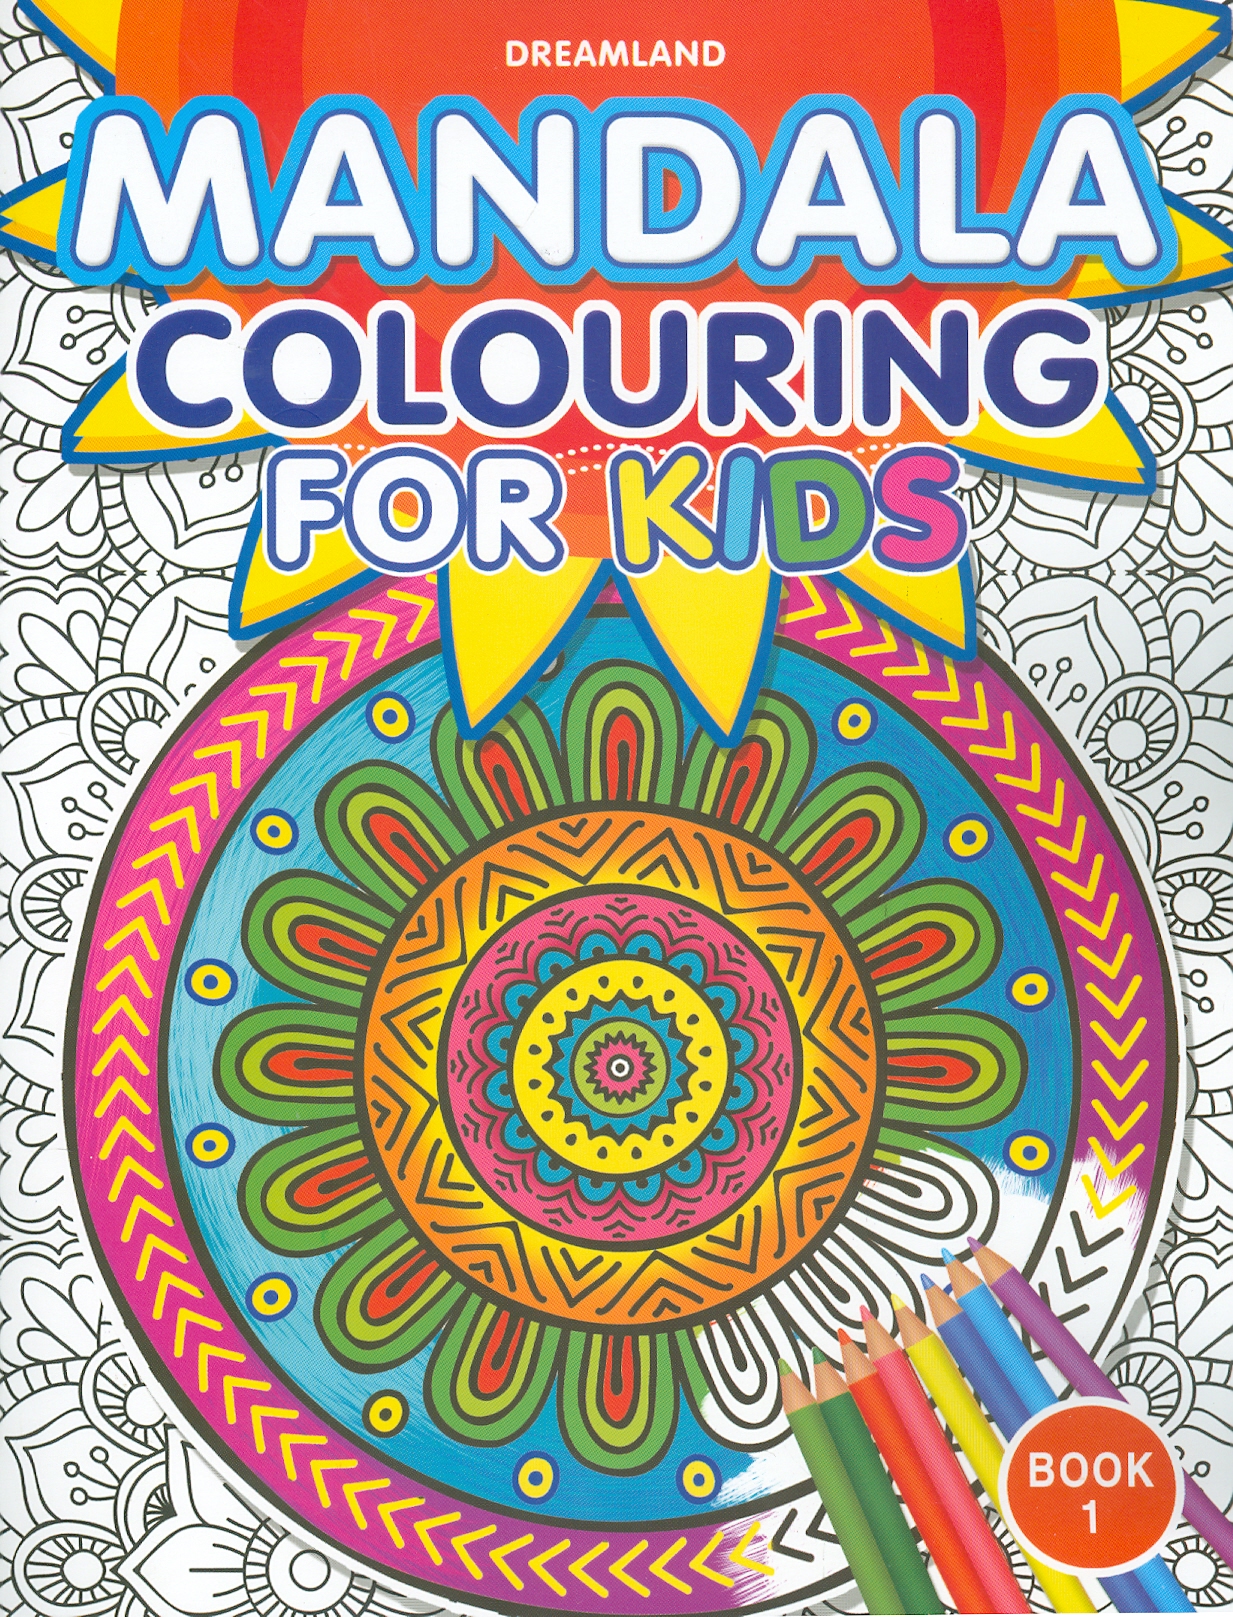 Mandala Colouring For Kids - Book 1 (Sách tô màu họa tiết cho trẻ em - Tập 1)